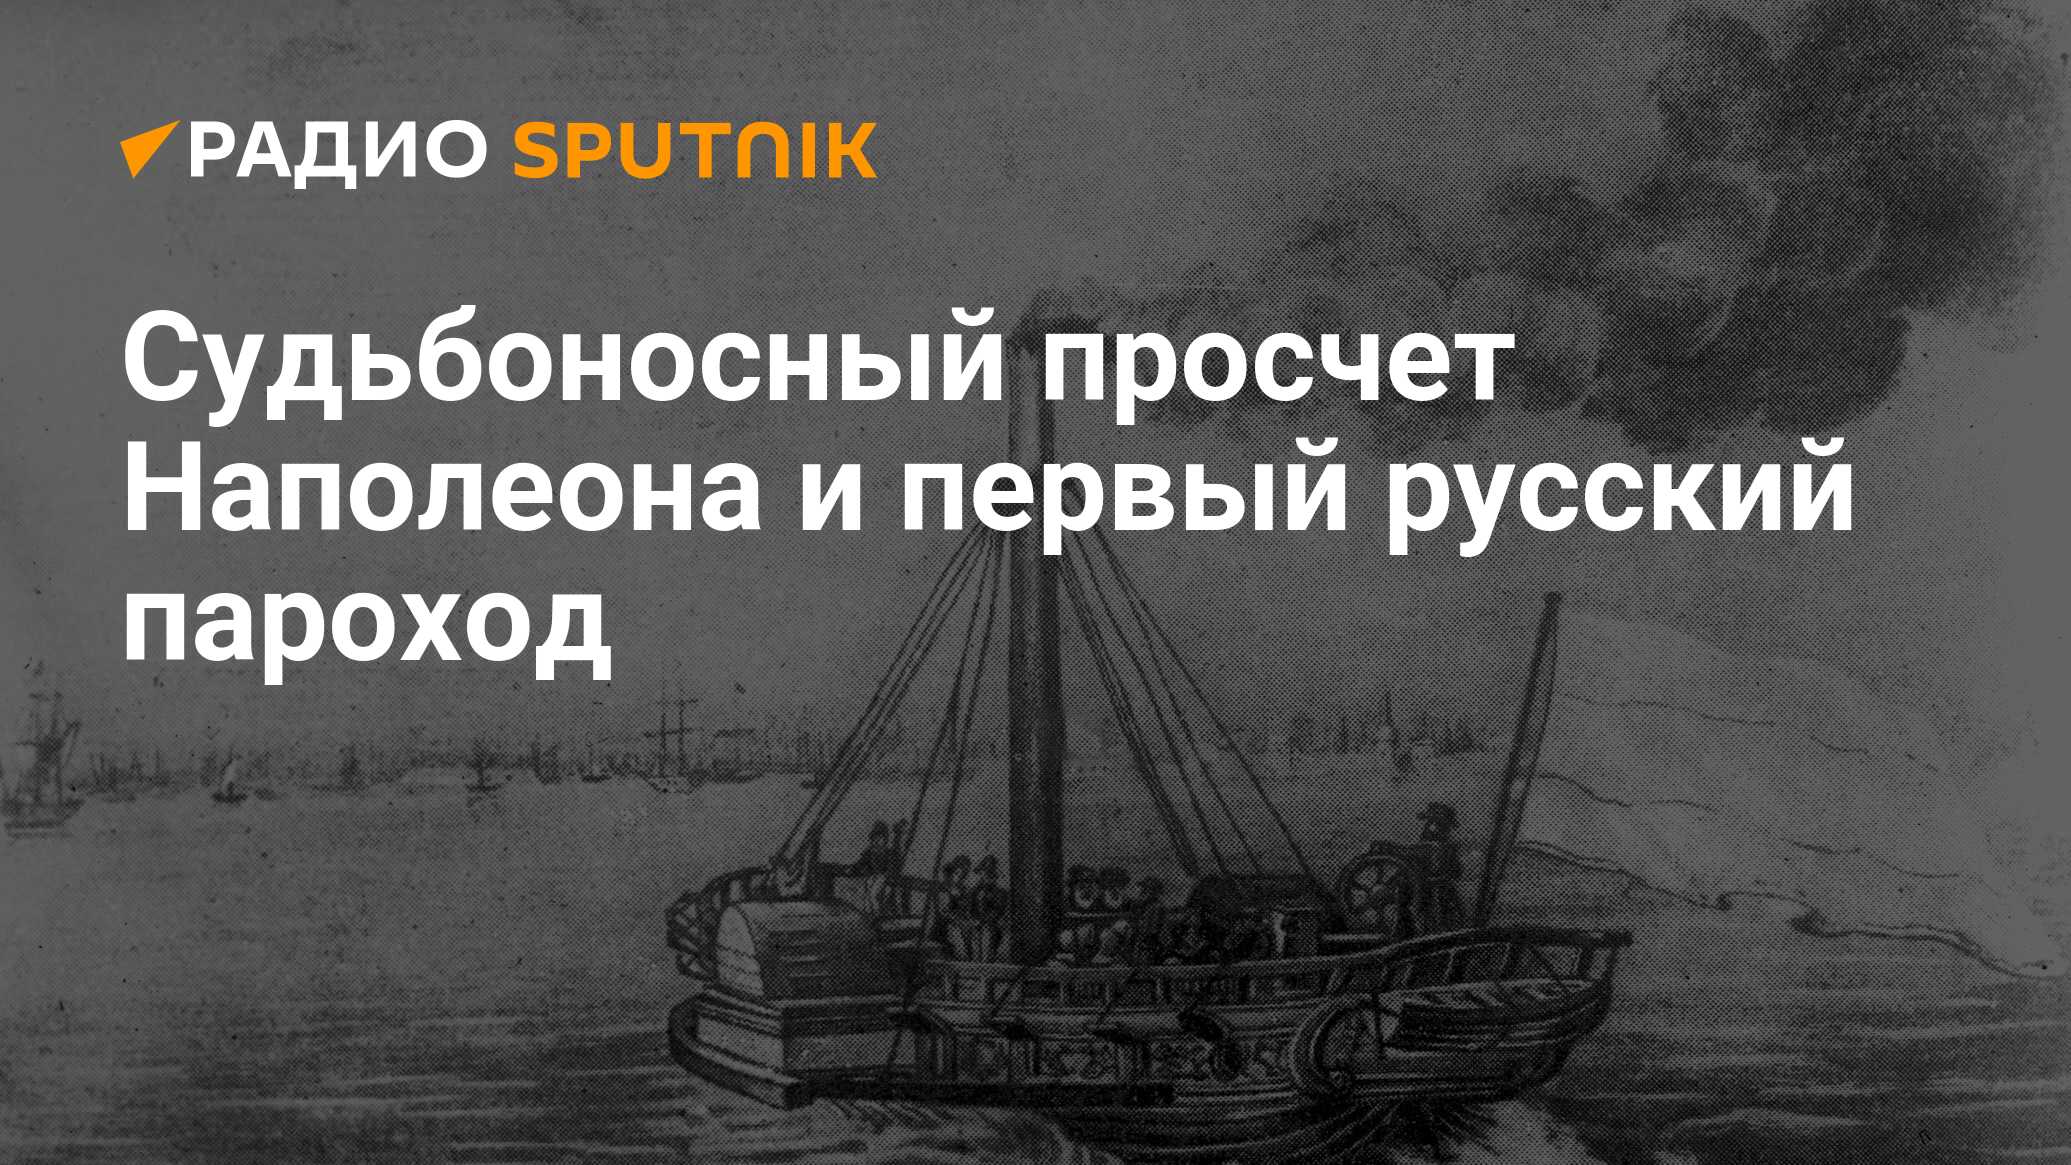 Процедура пароход. Первый русский пароход Санкт Петербург 19 век.